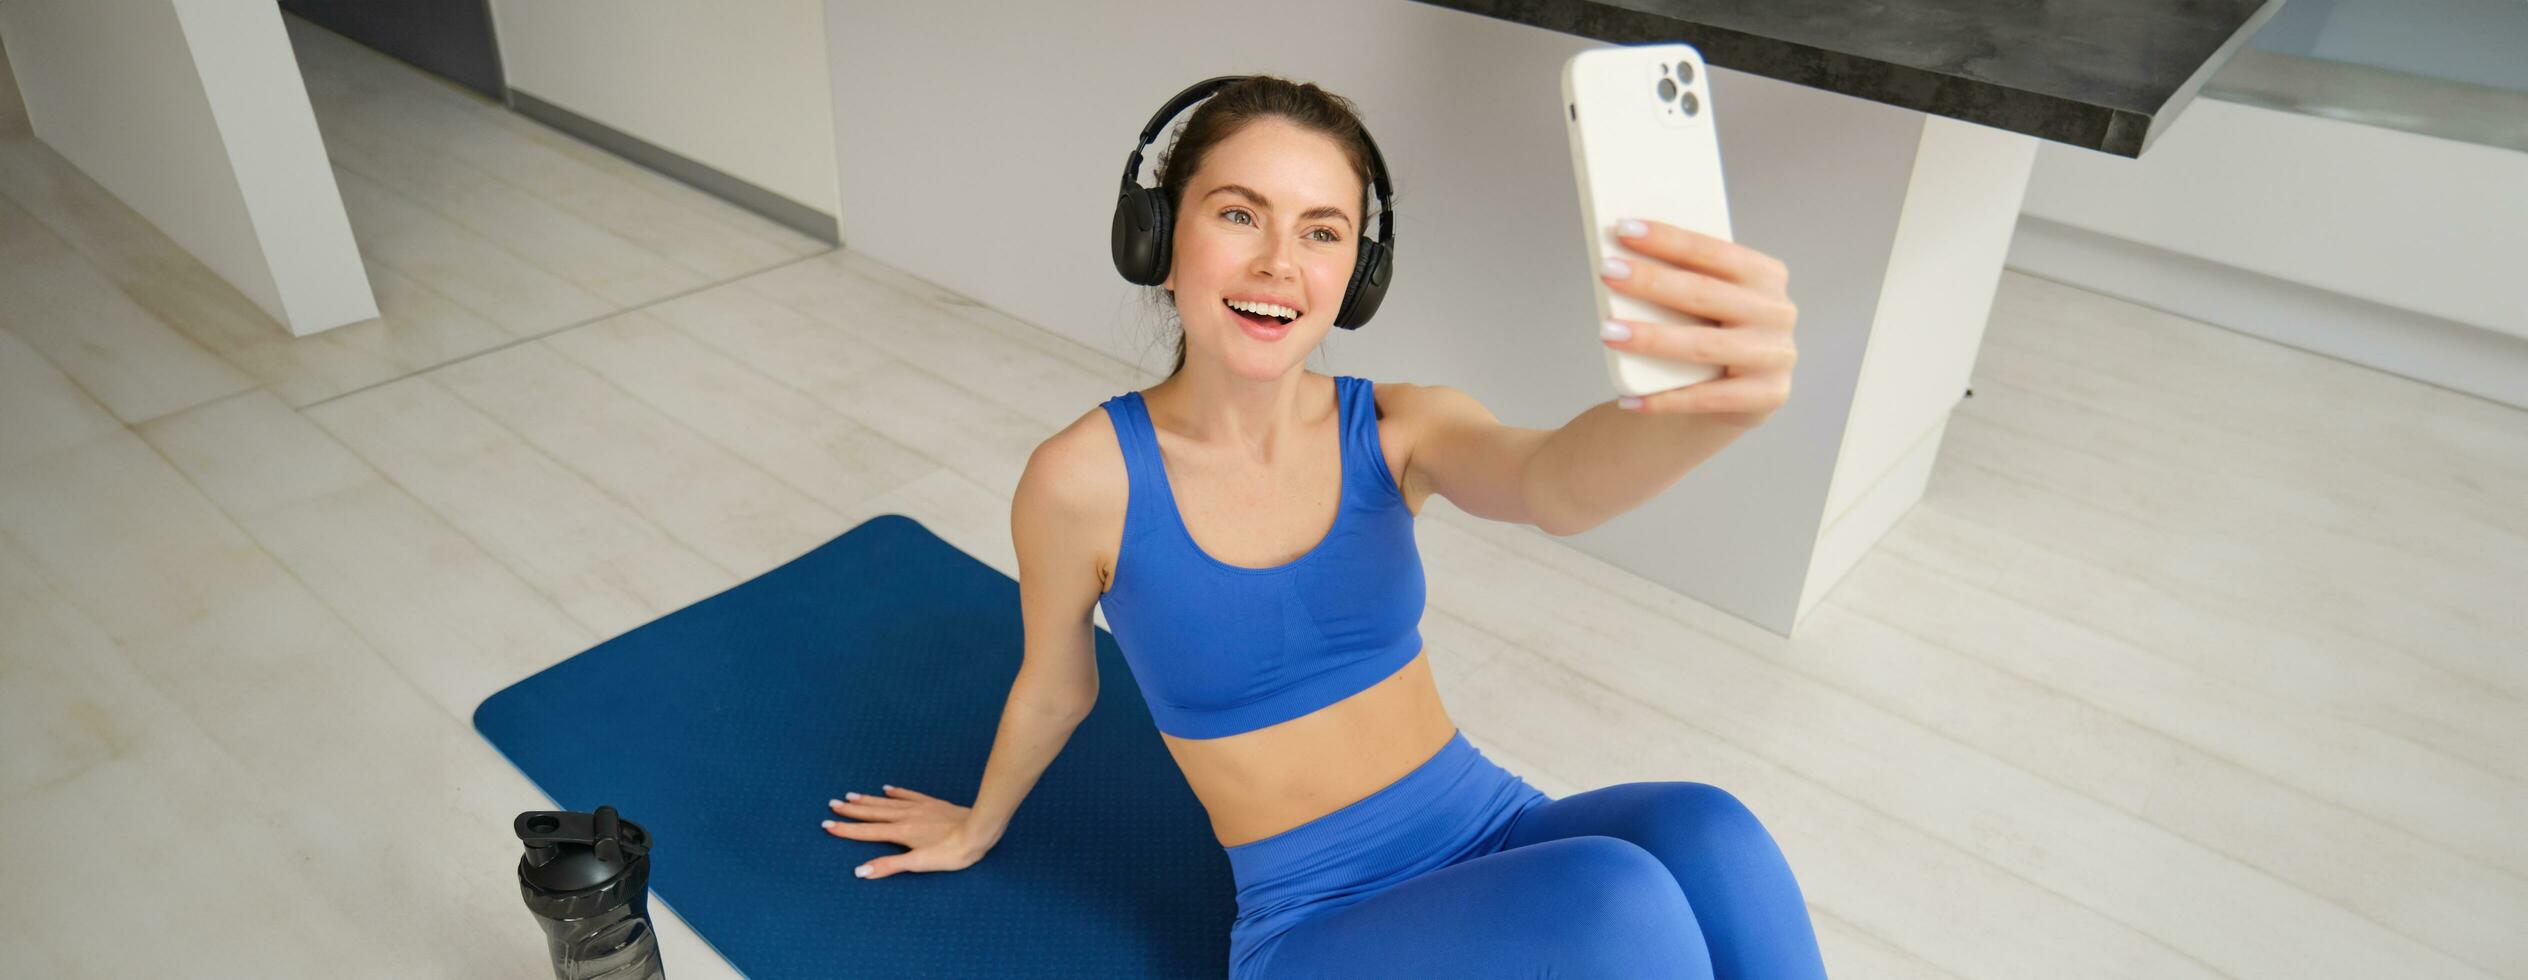 retrato de aptitud mujer en inalámbrico auriculares, se sienta en aptitud estera, haciendo selfies y fotos durante formación ejercicios, trabajando fuera a hogar